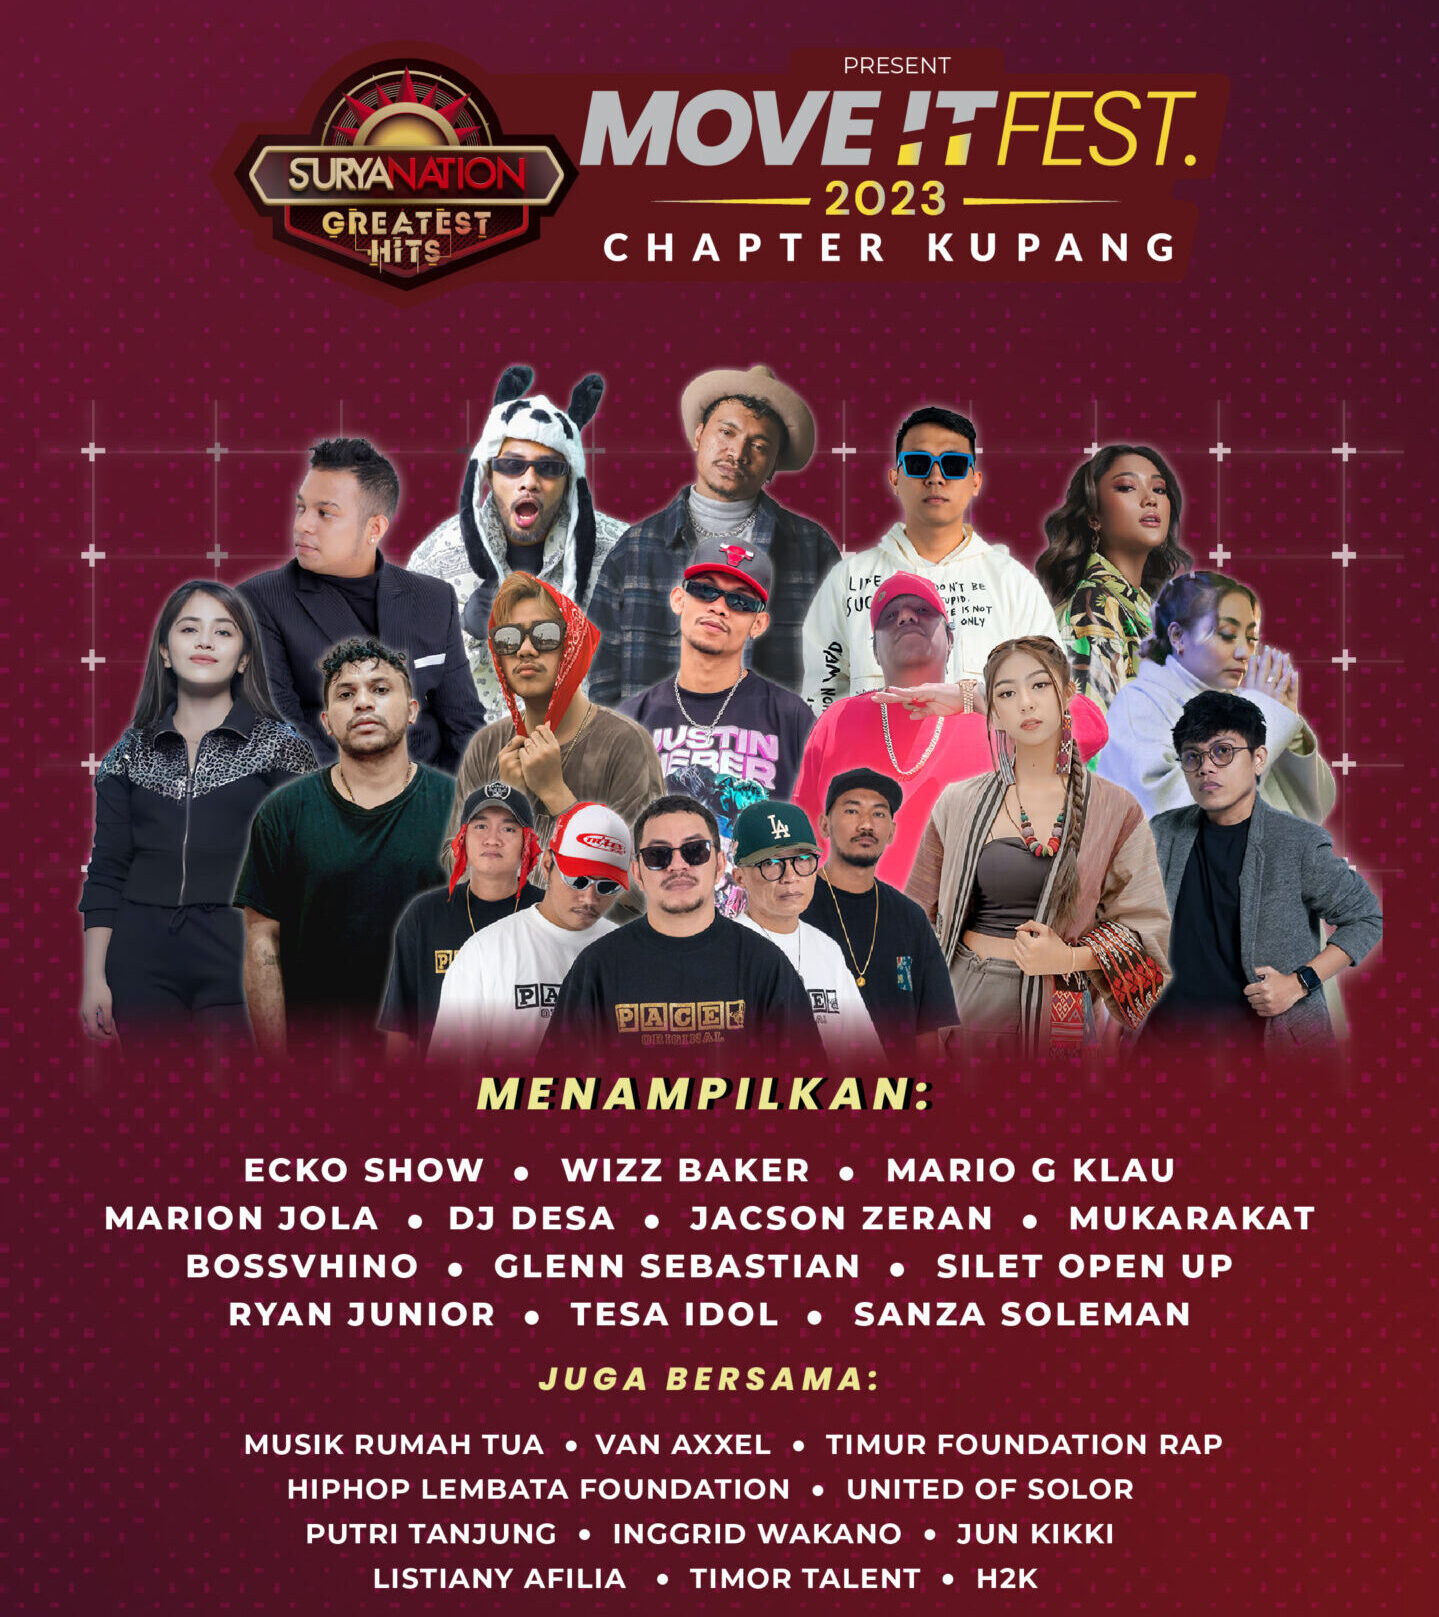 Konser musik Move It Fest yang digagas IDETIMUR akan menghadirkan musisi-musisi yang berasal dari Indonesia Timur diantaranya Mario Klau, Ecko Show, Silent Open Up, Wizz Baker, Glen Sebastian, Mukarakat, DJ Desa, Tesa Idol, Jacson Zeran, Ryan Junior, Boss Vhino dan beberapa musisi timur lainnya.